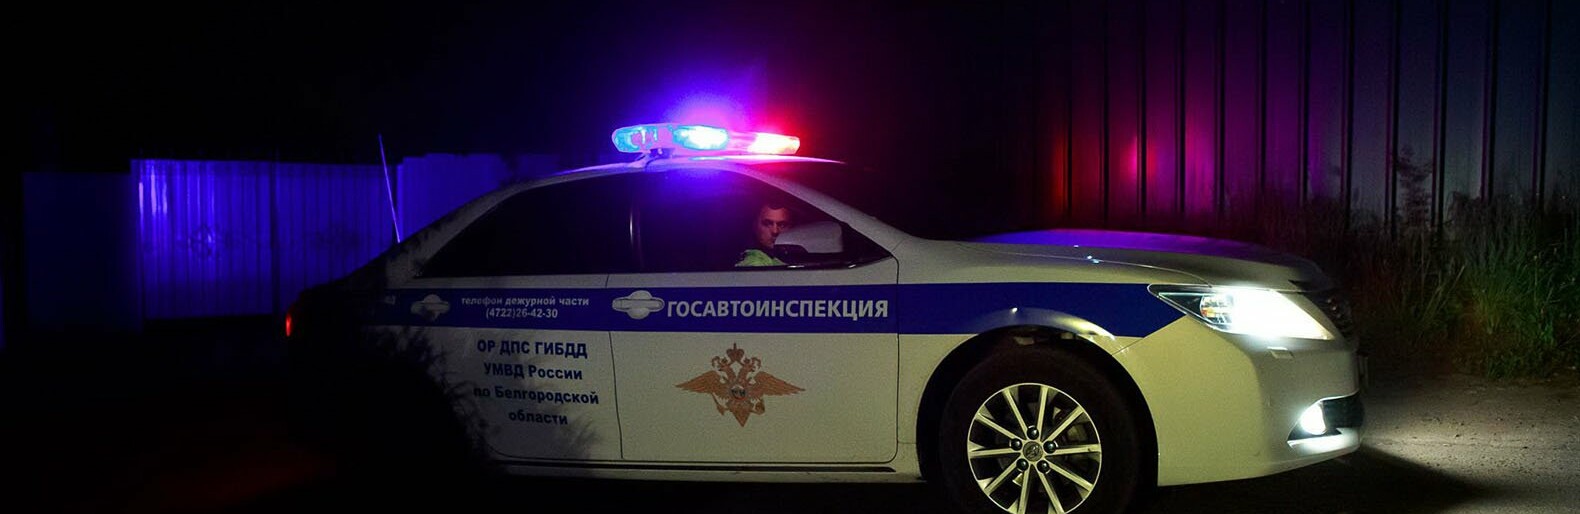 В центре Белгорода патрульный автомобиль гаишников столкнулся с иномаркой